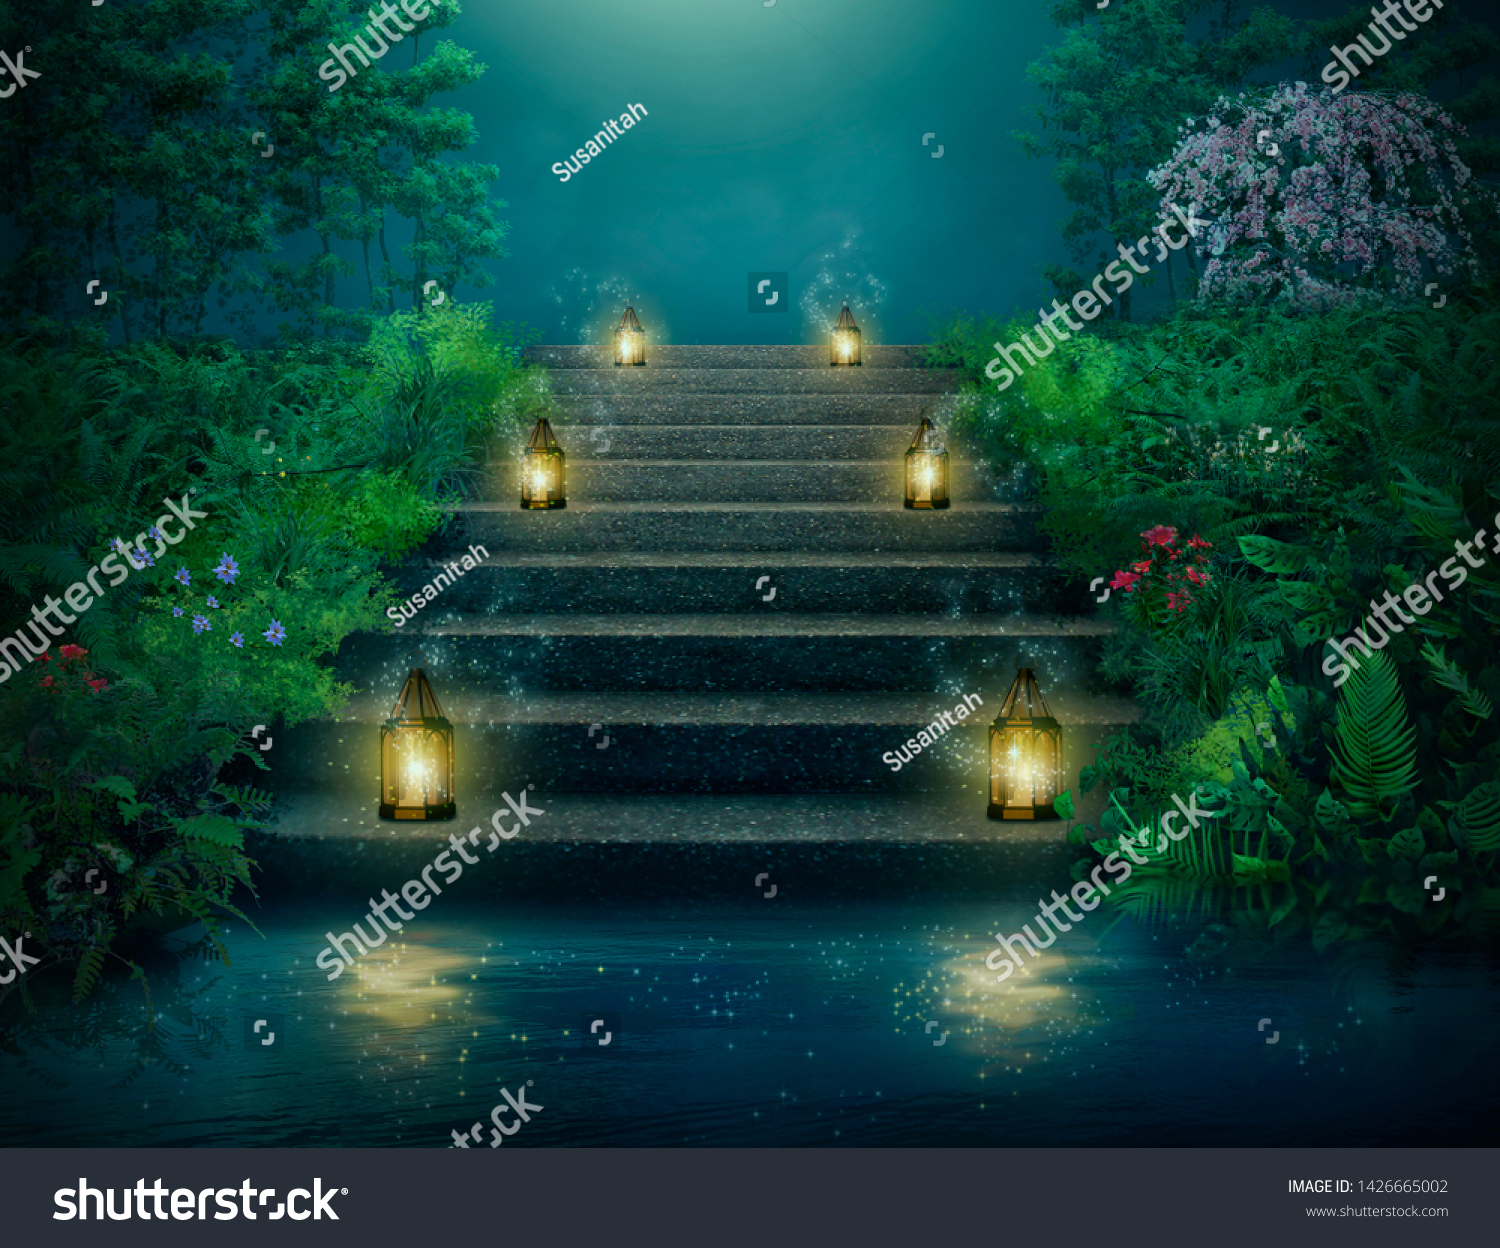 階段を照らす灯篭を持つ空想の庭 フォトマニピュレーション 3dレンダリング のイラスト素材